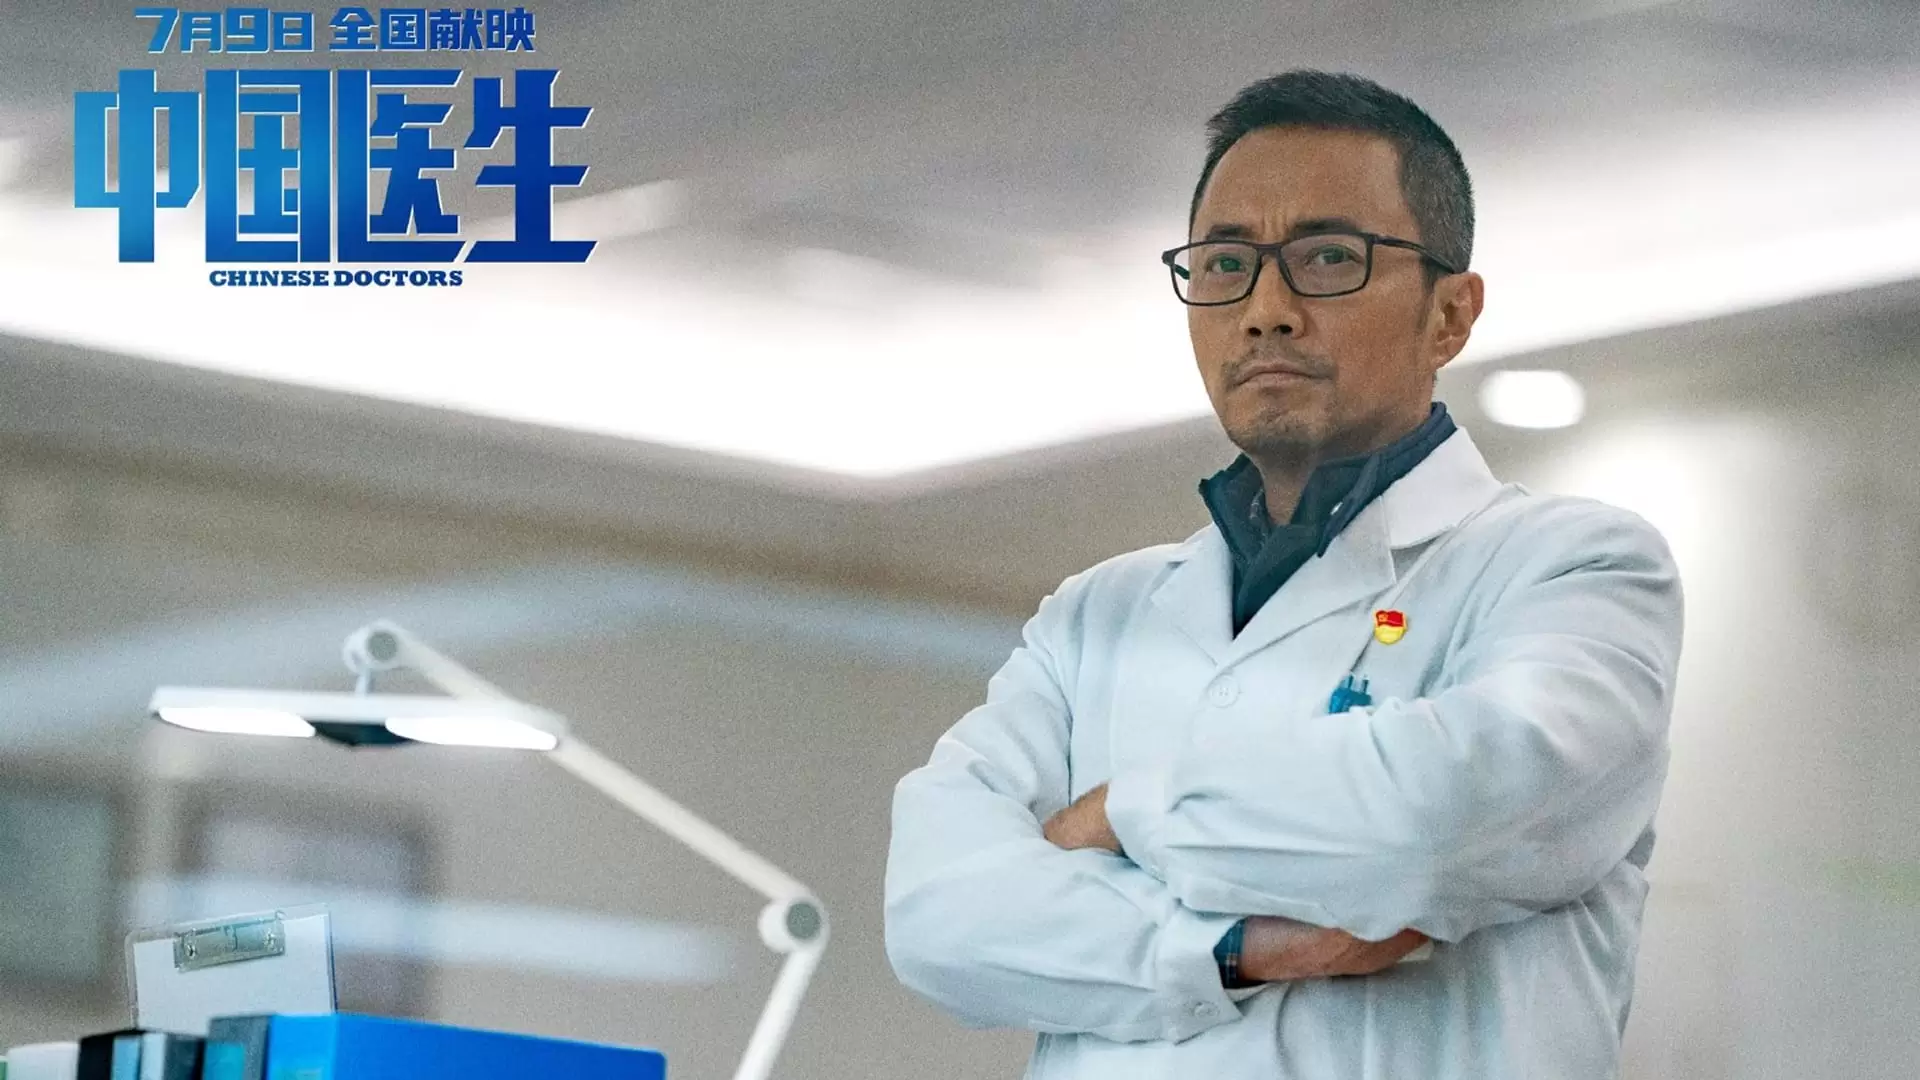 دانلود فیلم Chinese Doctors 2021